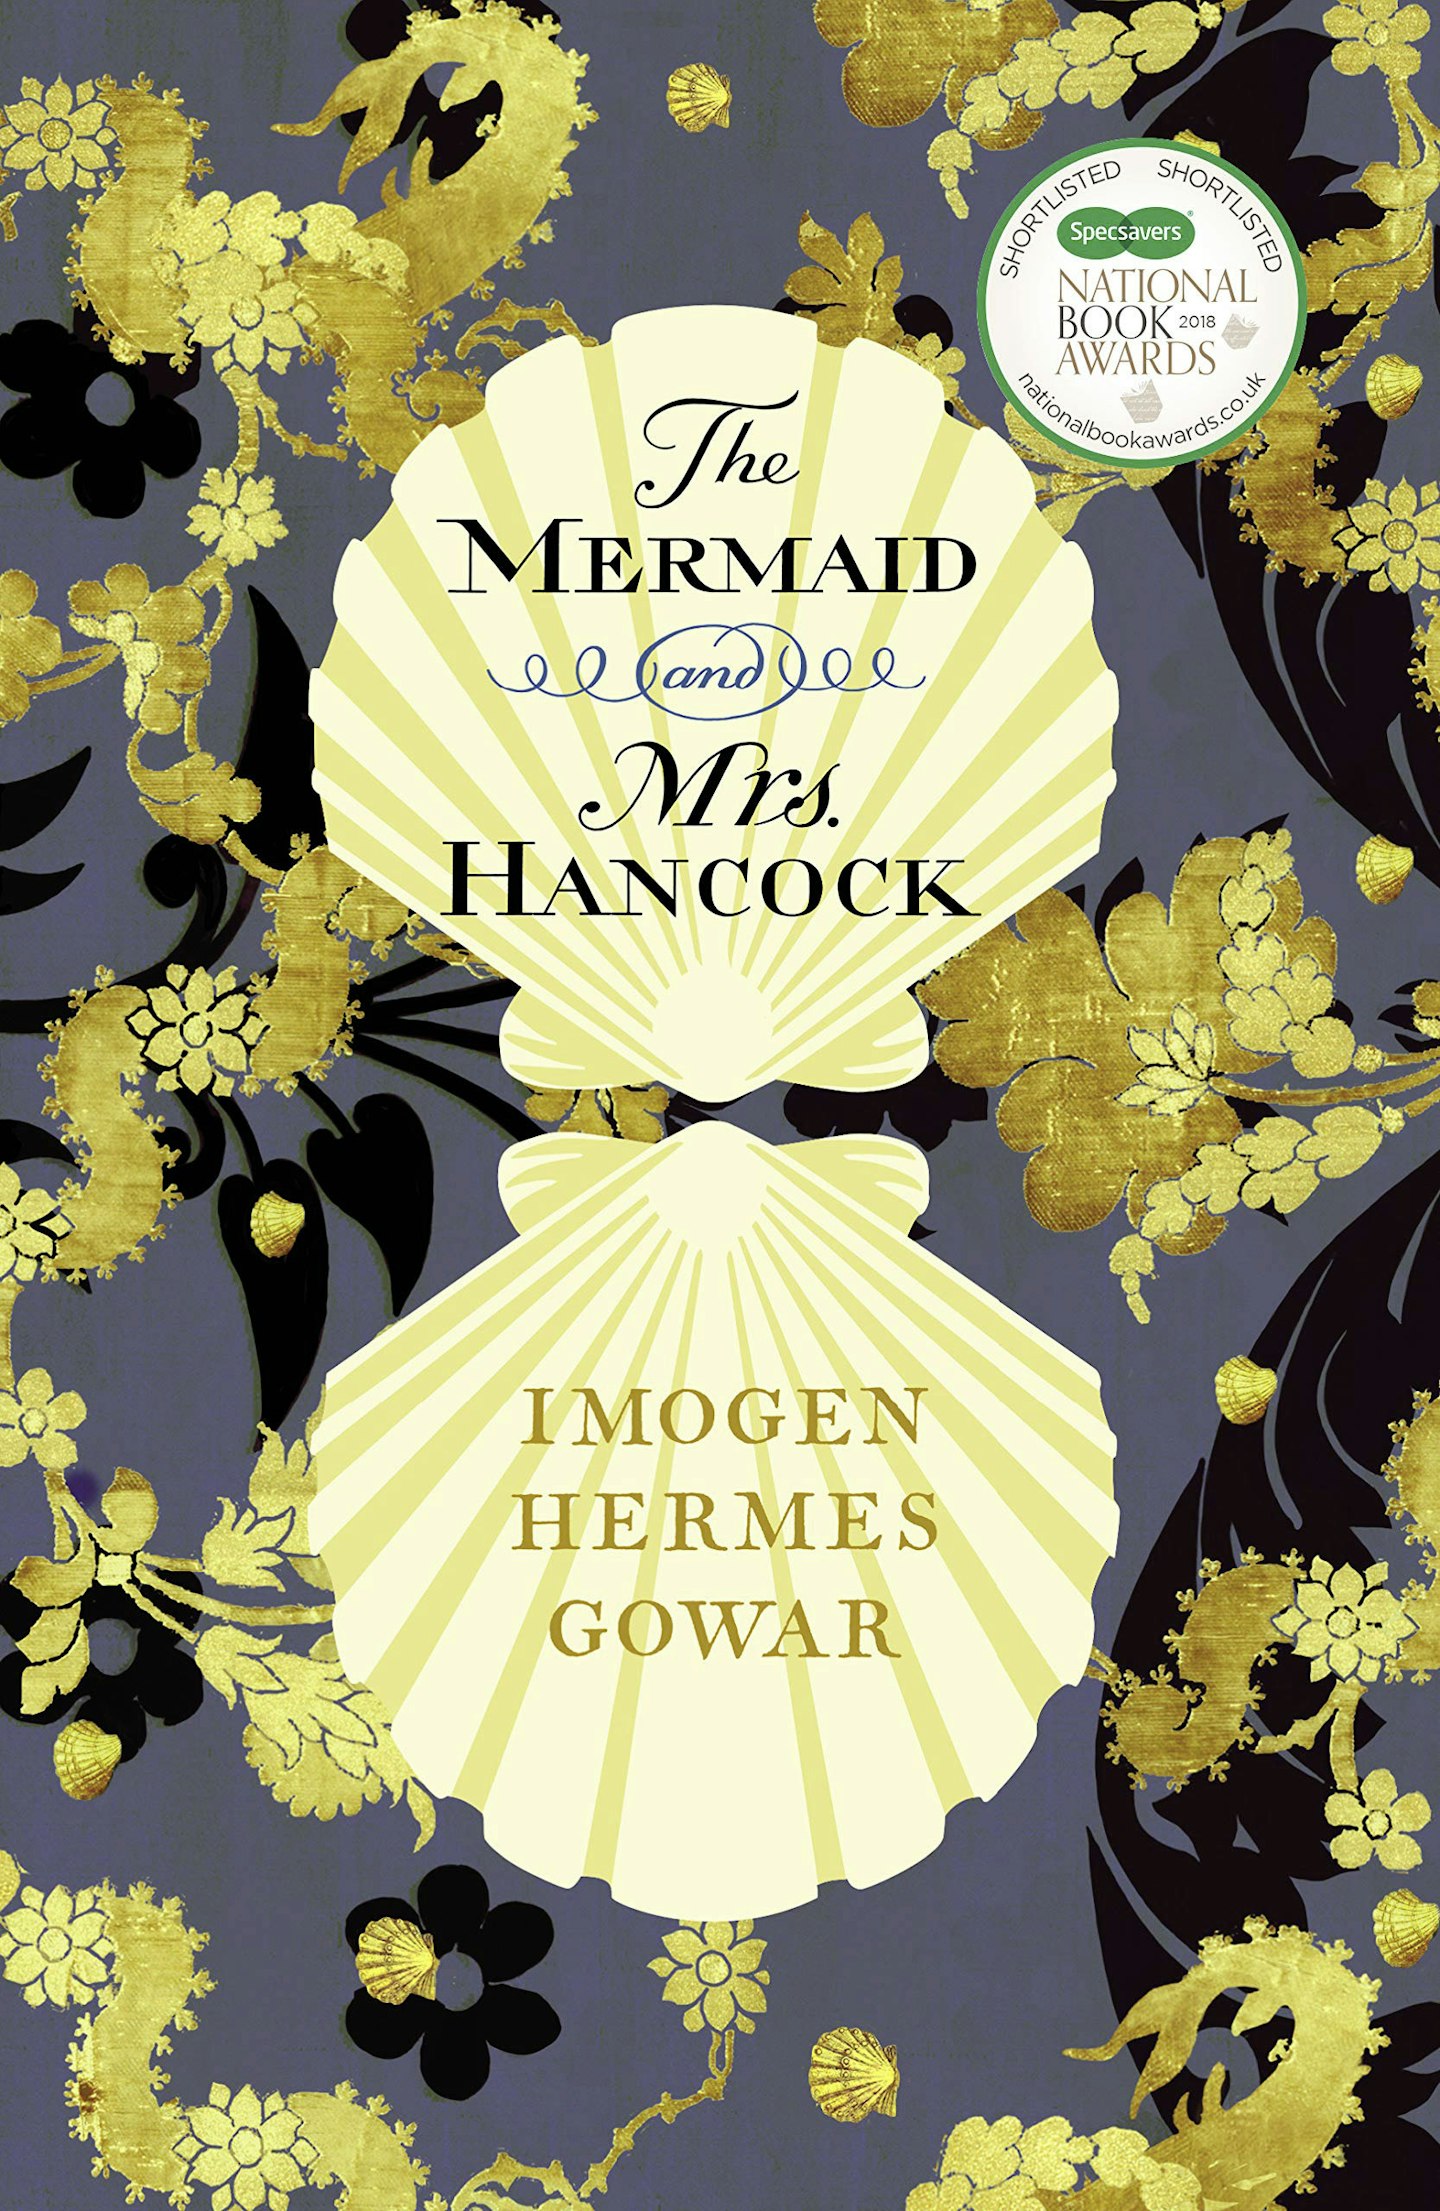 The Mermaid & Mrs Hancock - Imogen Hermes Gowar (Vintage)